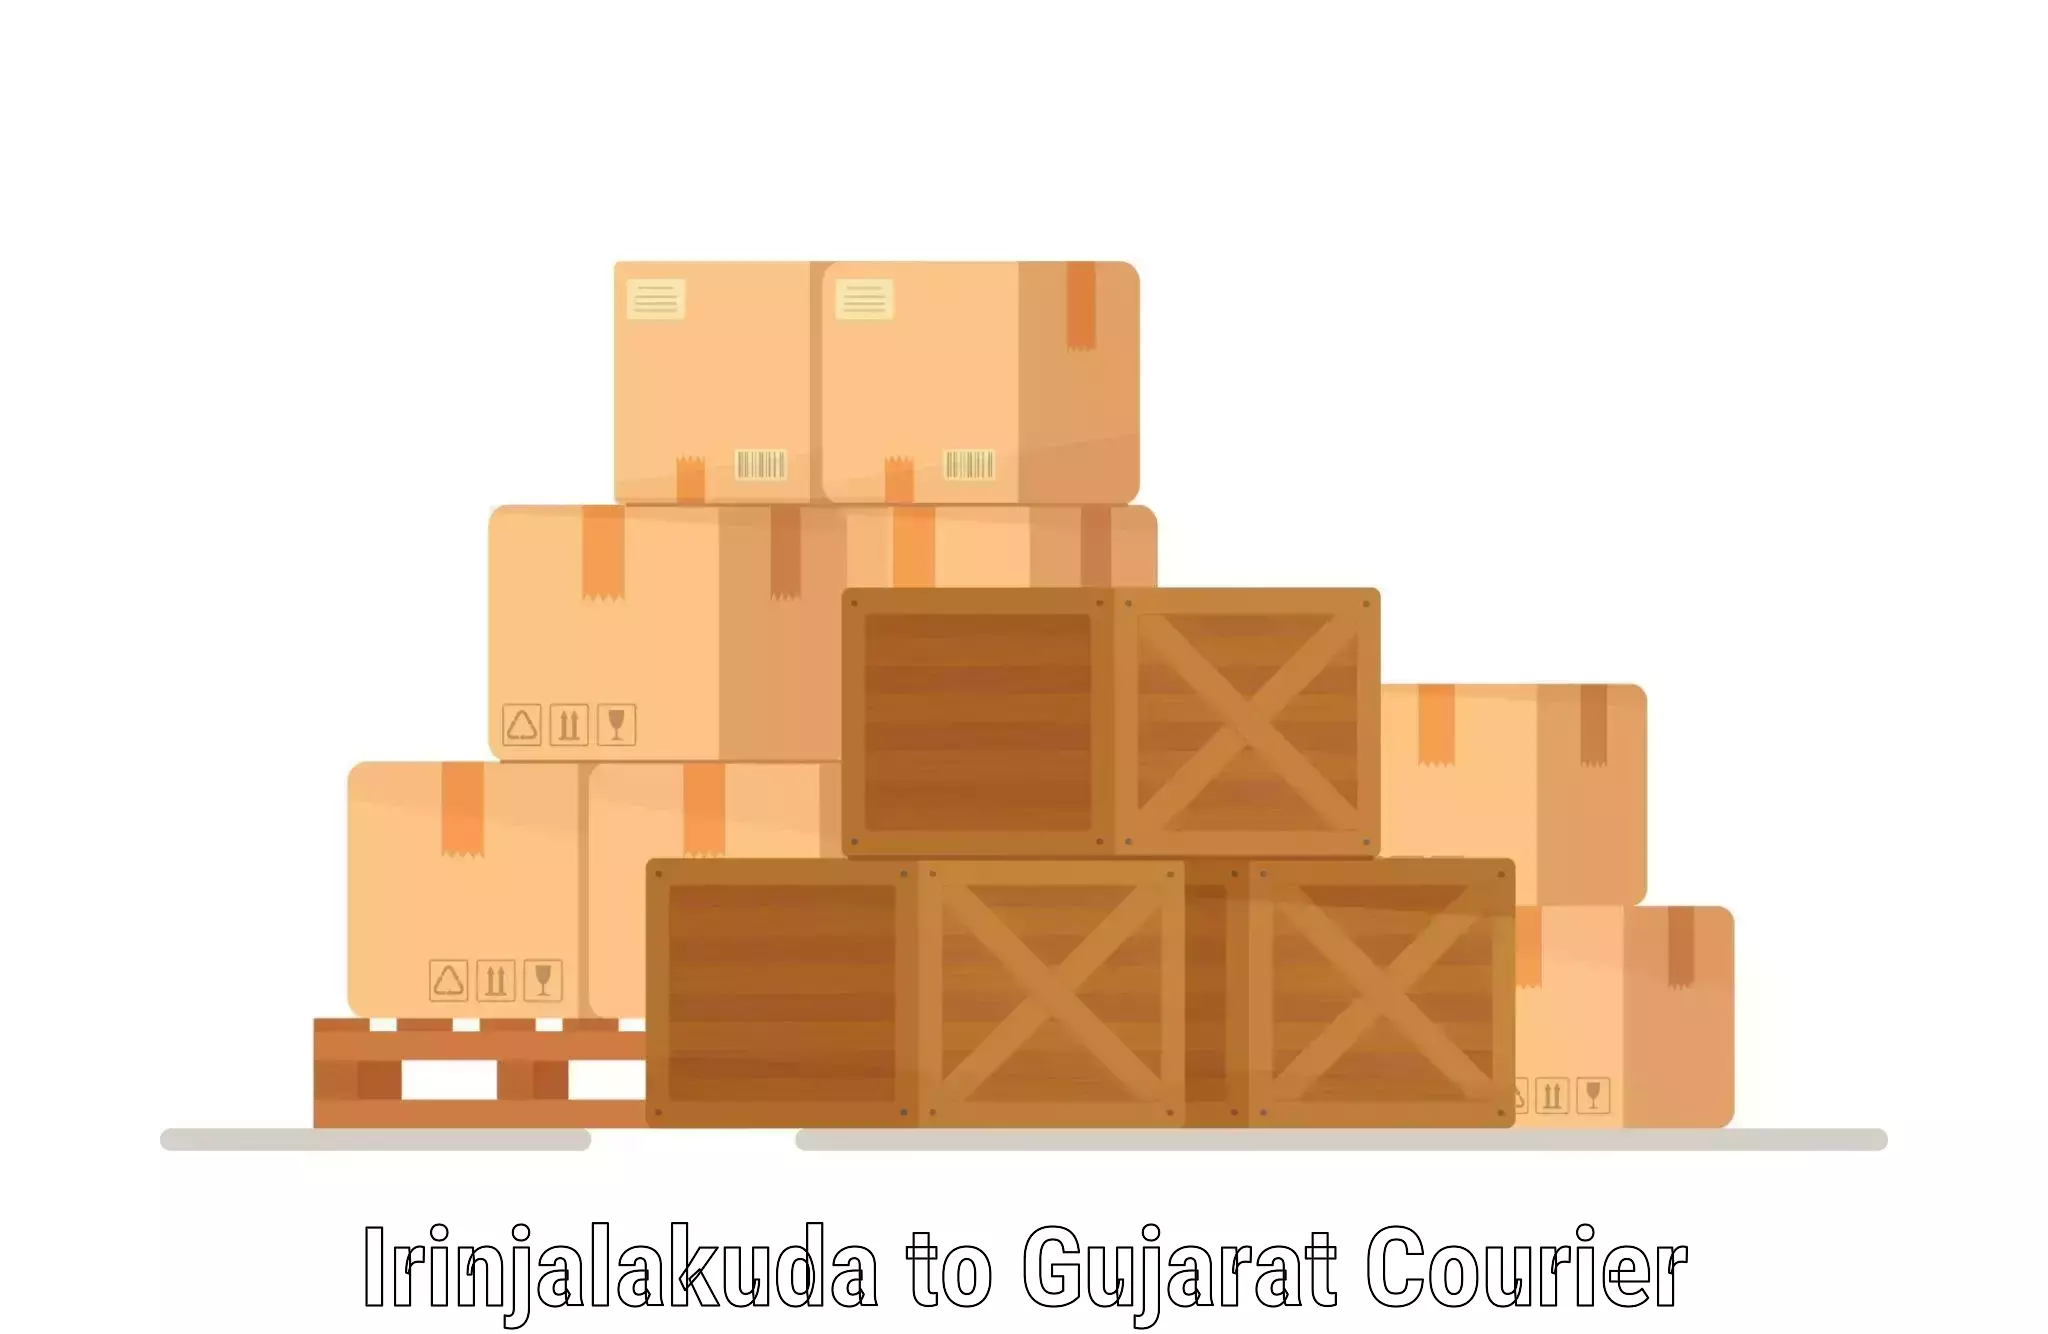 High-performance logistics Irinjalakuda to Narmada Gujarat